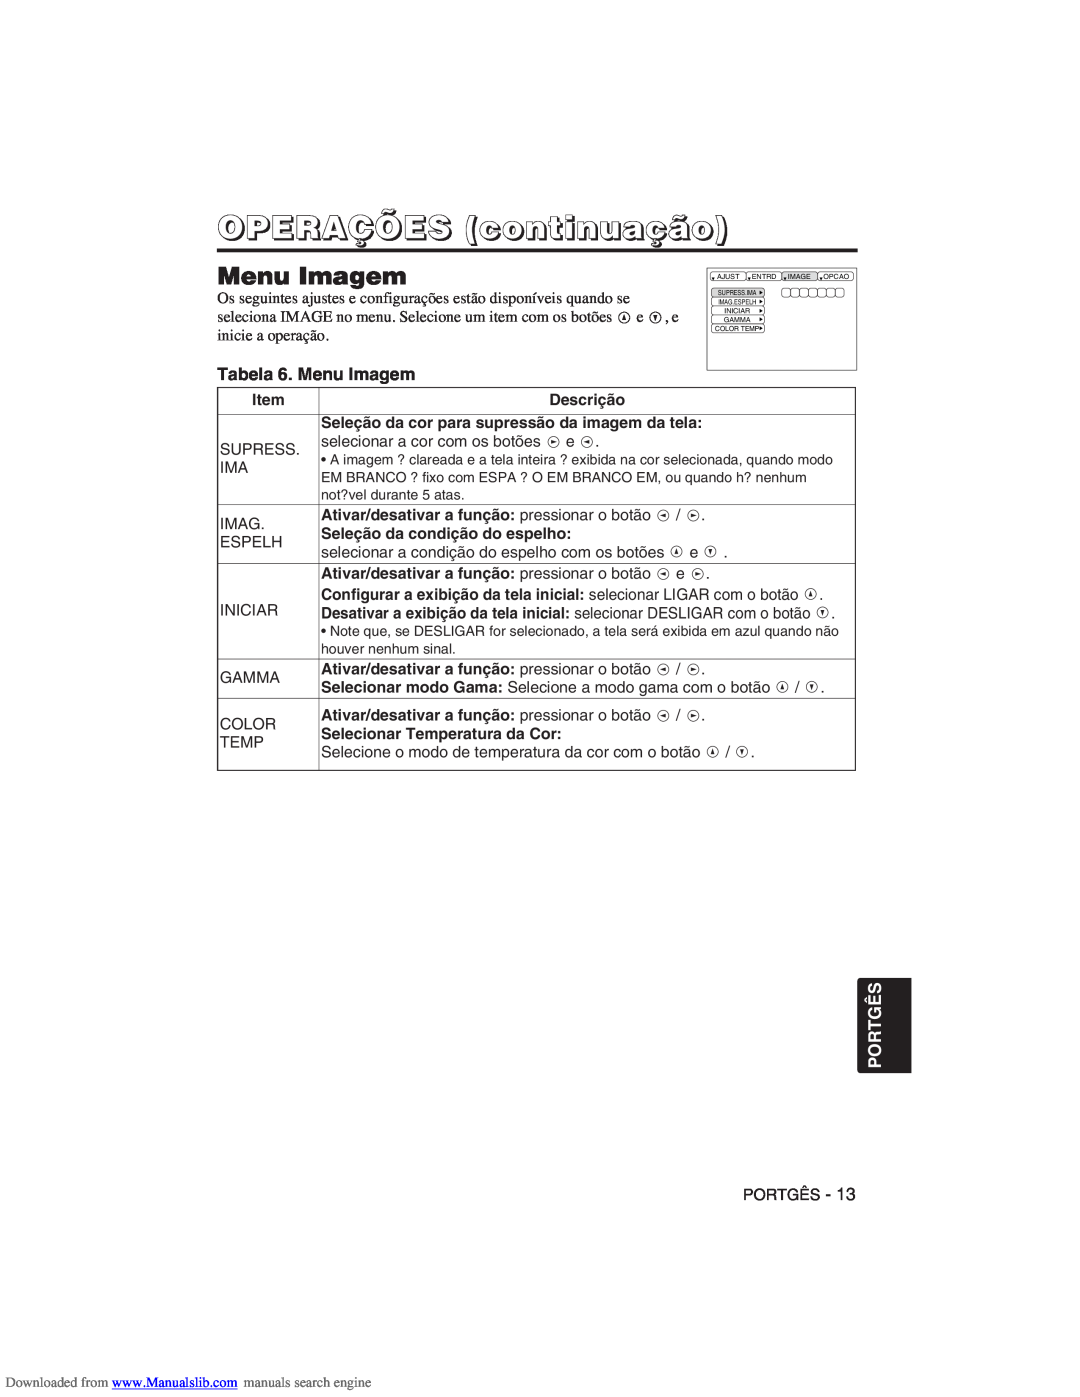 Hitachi CP-X275W user manual Tabela 6. Menu Imagem, OPERAÇÕES continuação, Portgês 